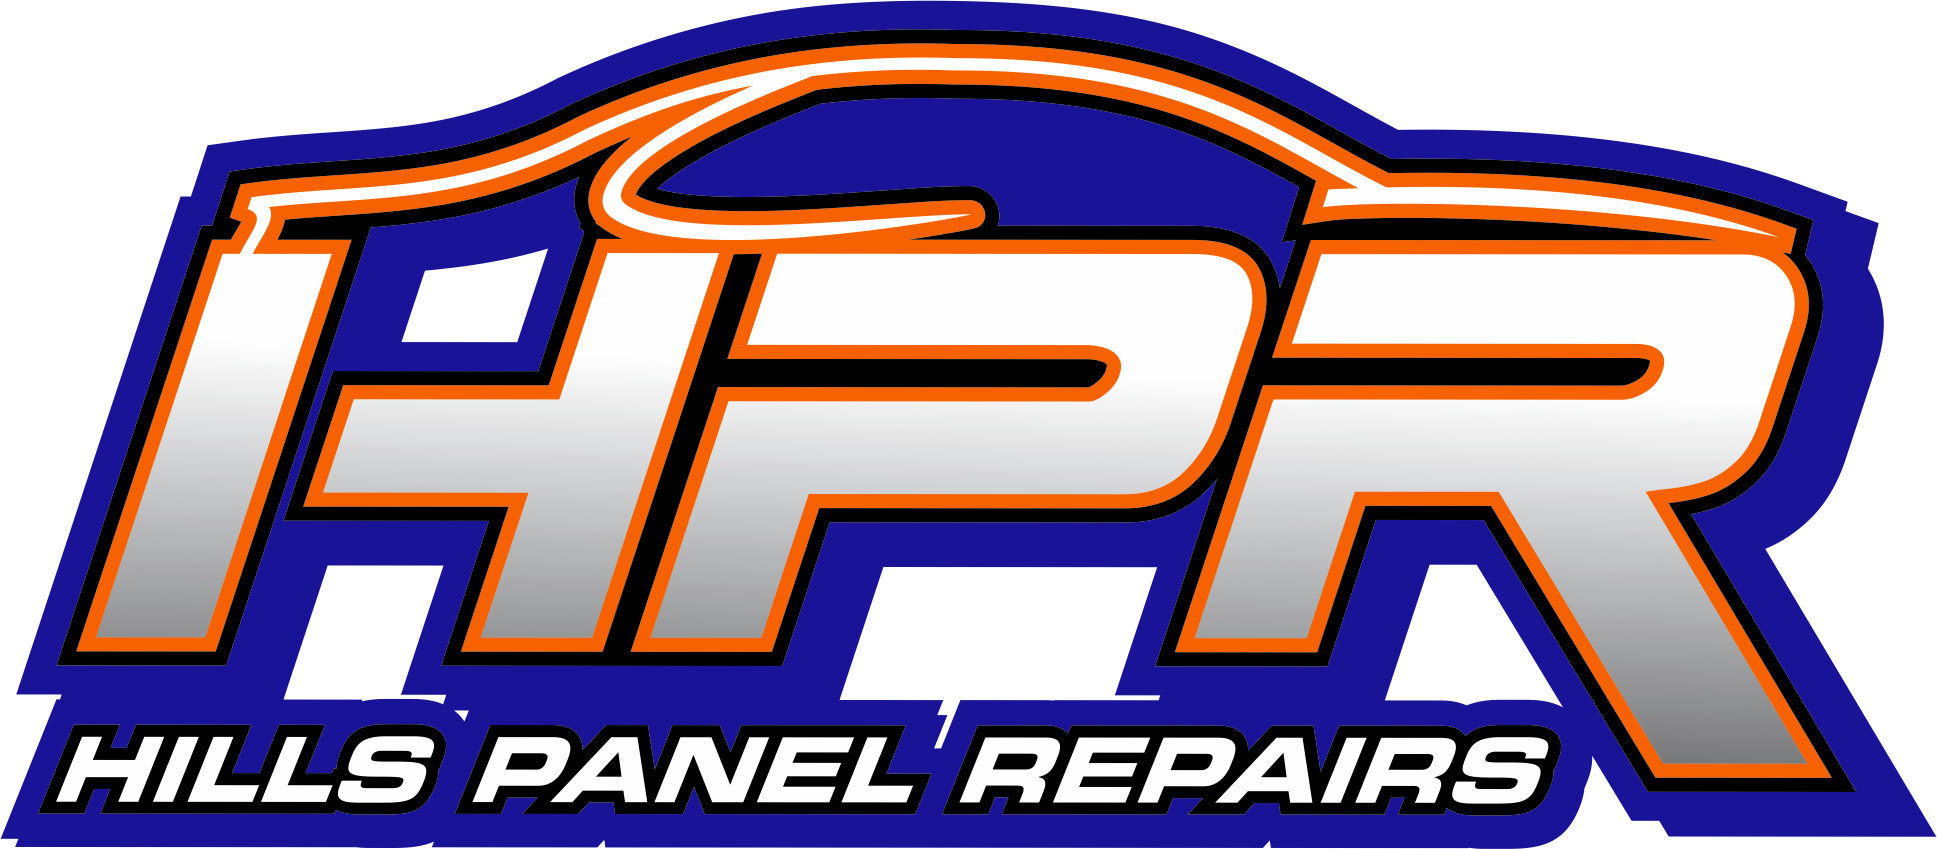 Hills Panel Repairs